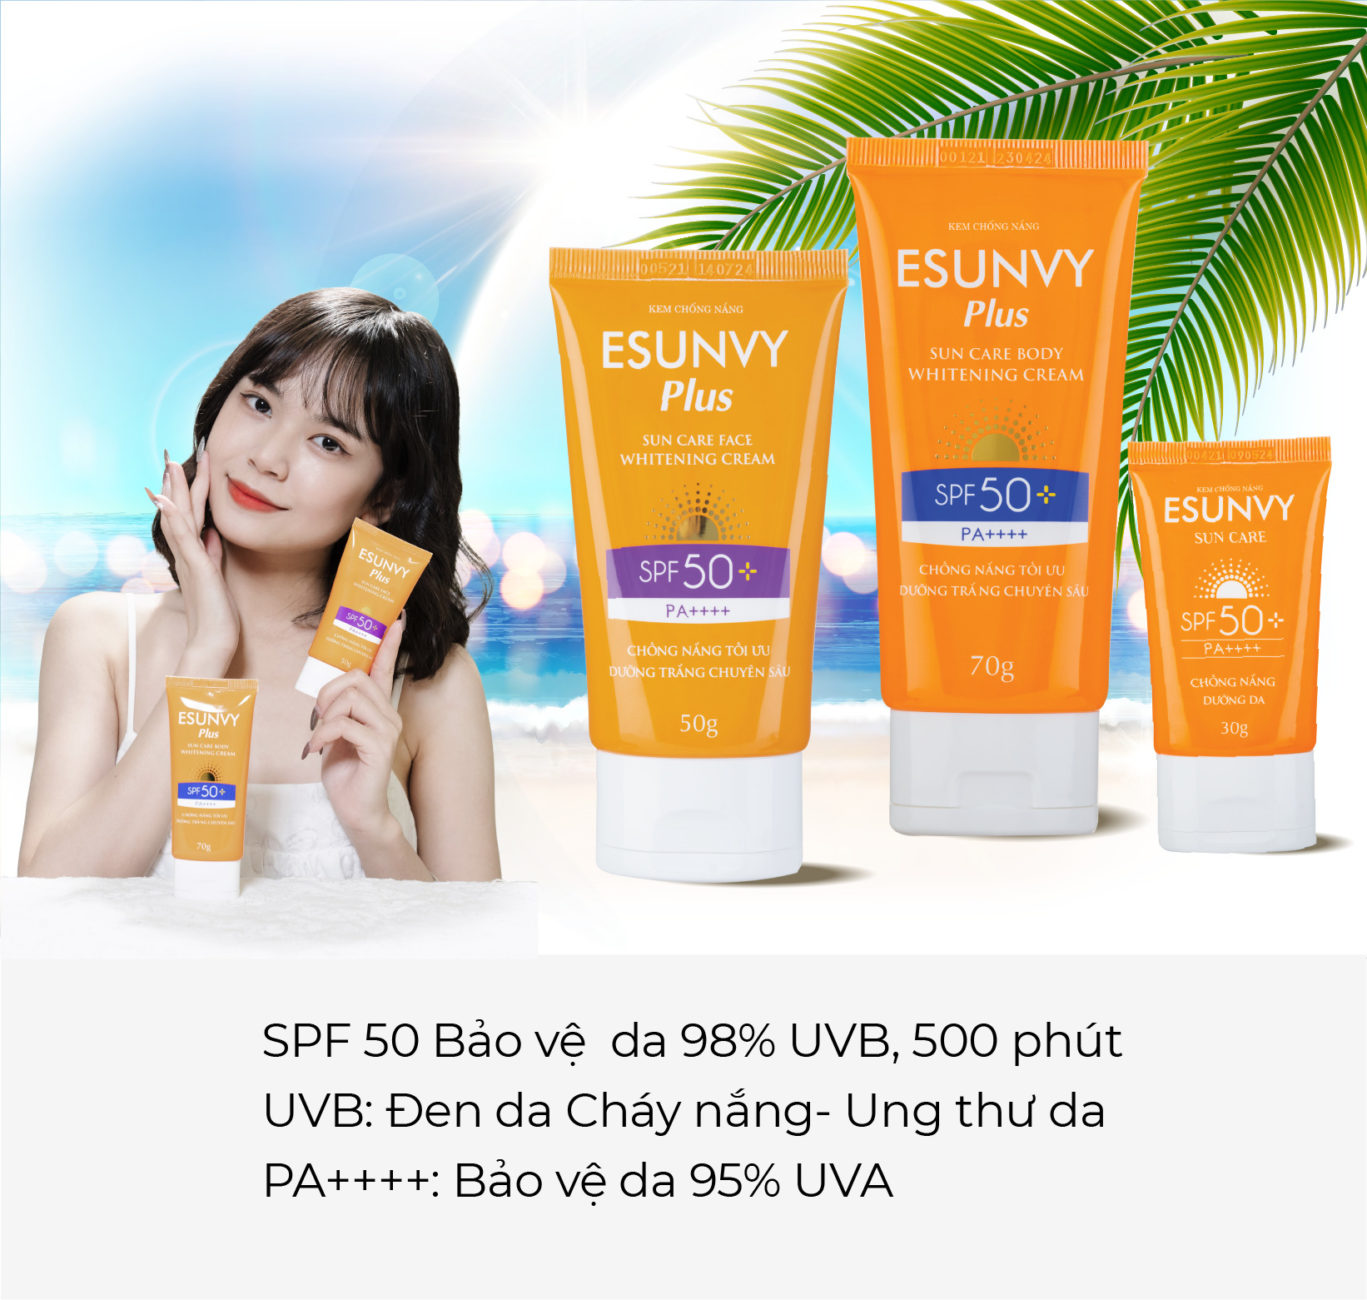 7. Tại sao Beauty Blogger tin dùng kem chống nắng Esunvy? 1